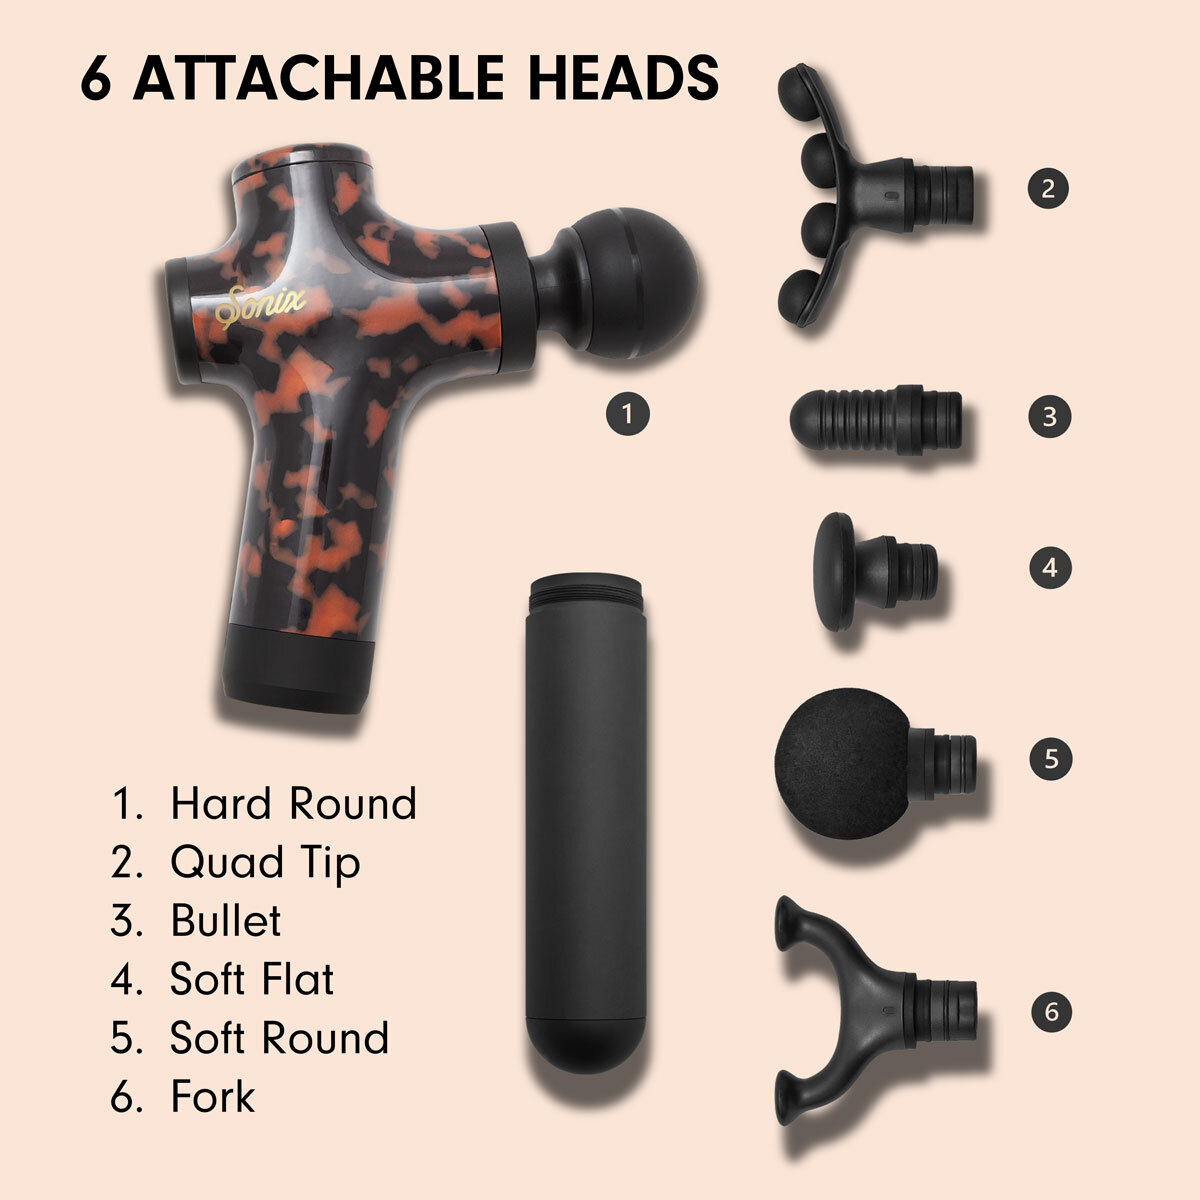 Description of Sonix R3 Massage Gun attachable heads